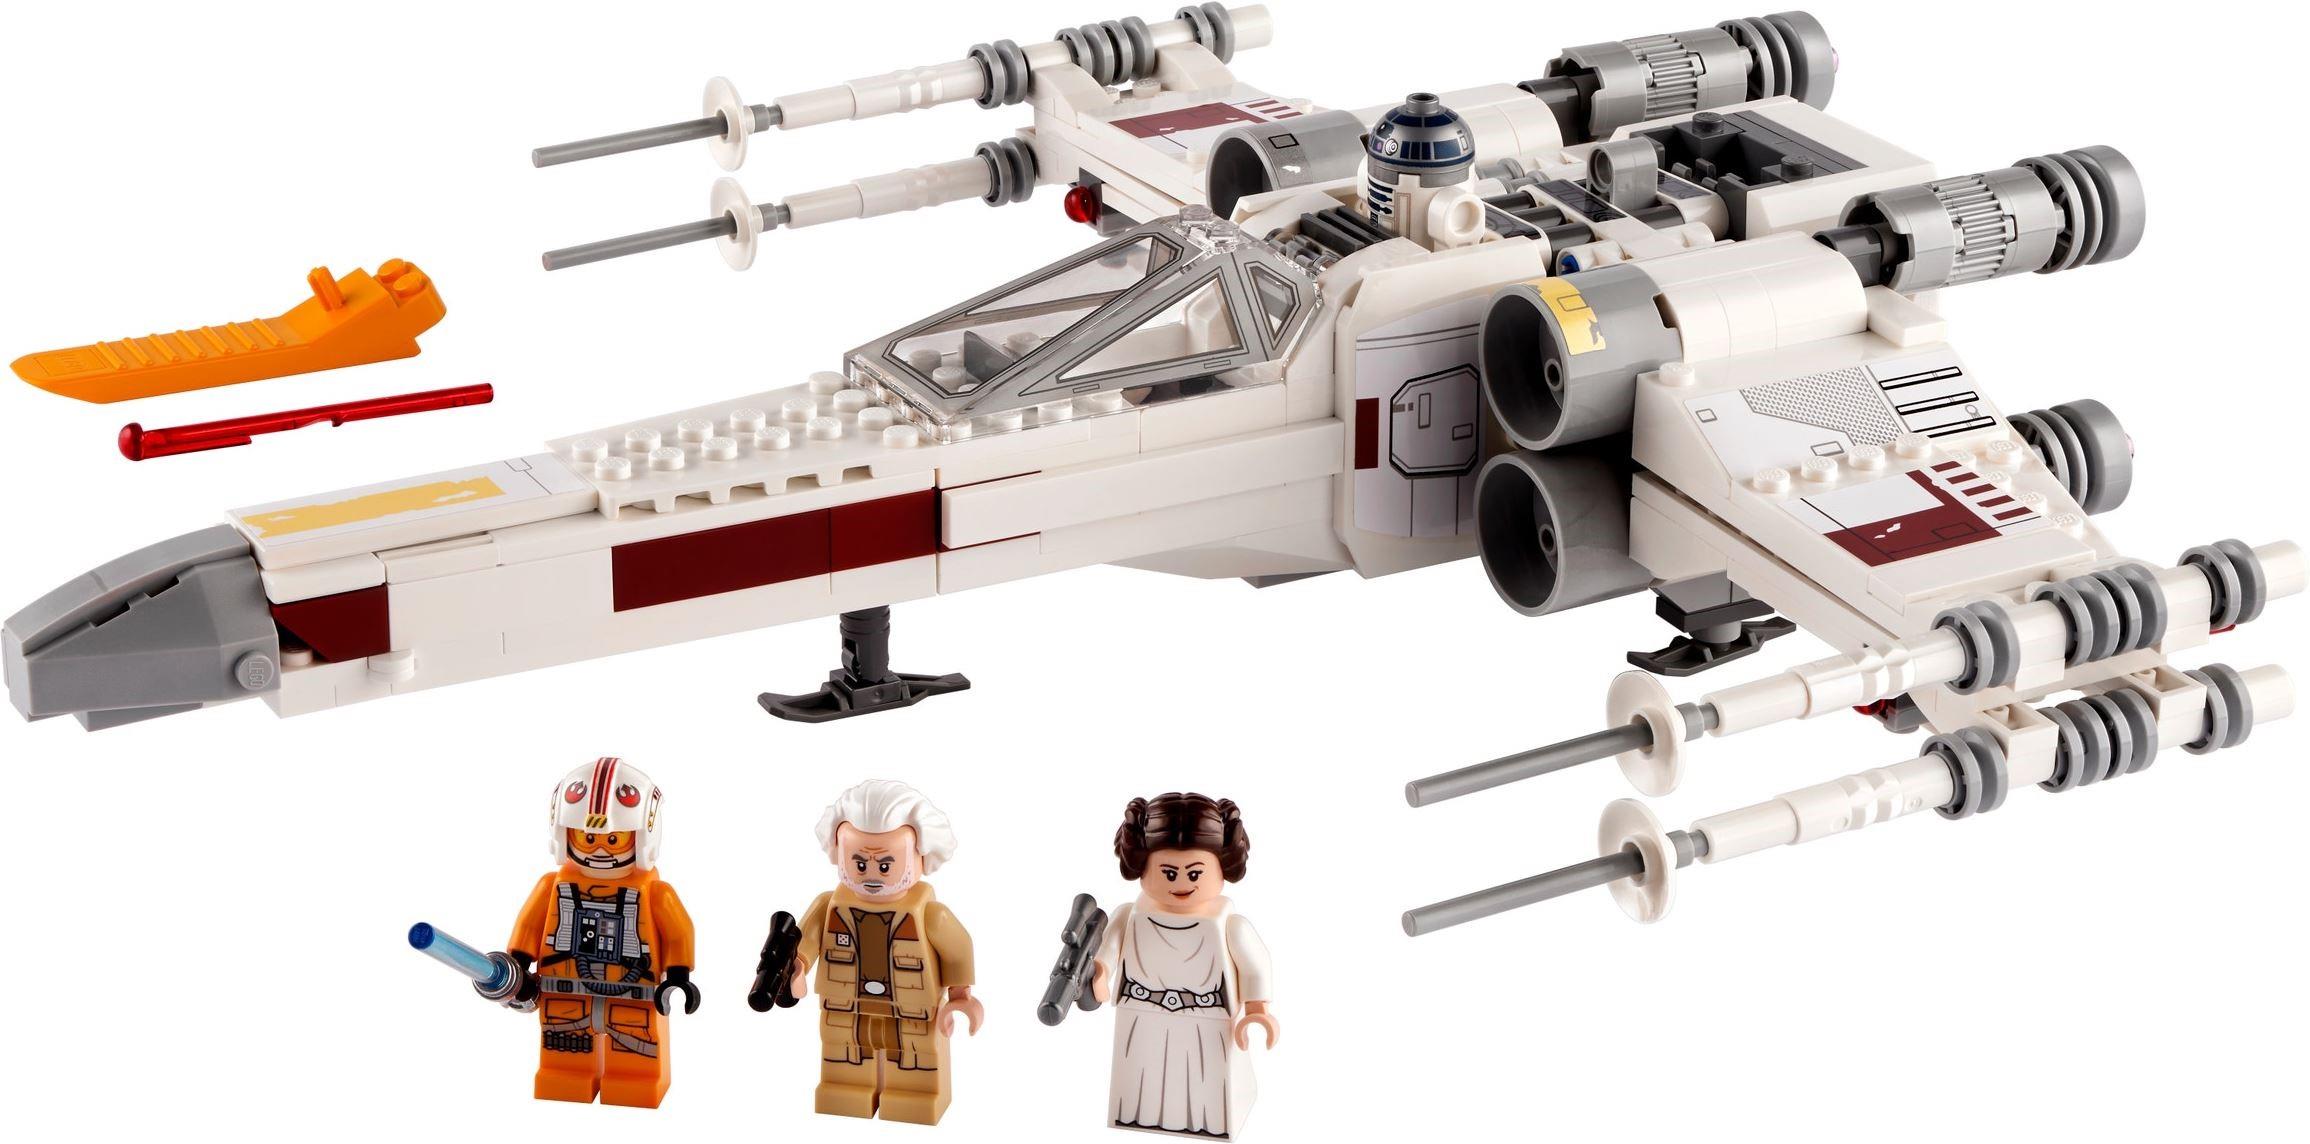 LEGO 75301 Star Wars Luke Skywalker's X-wing Fighter